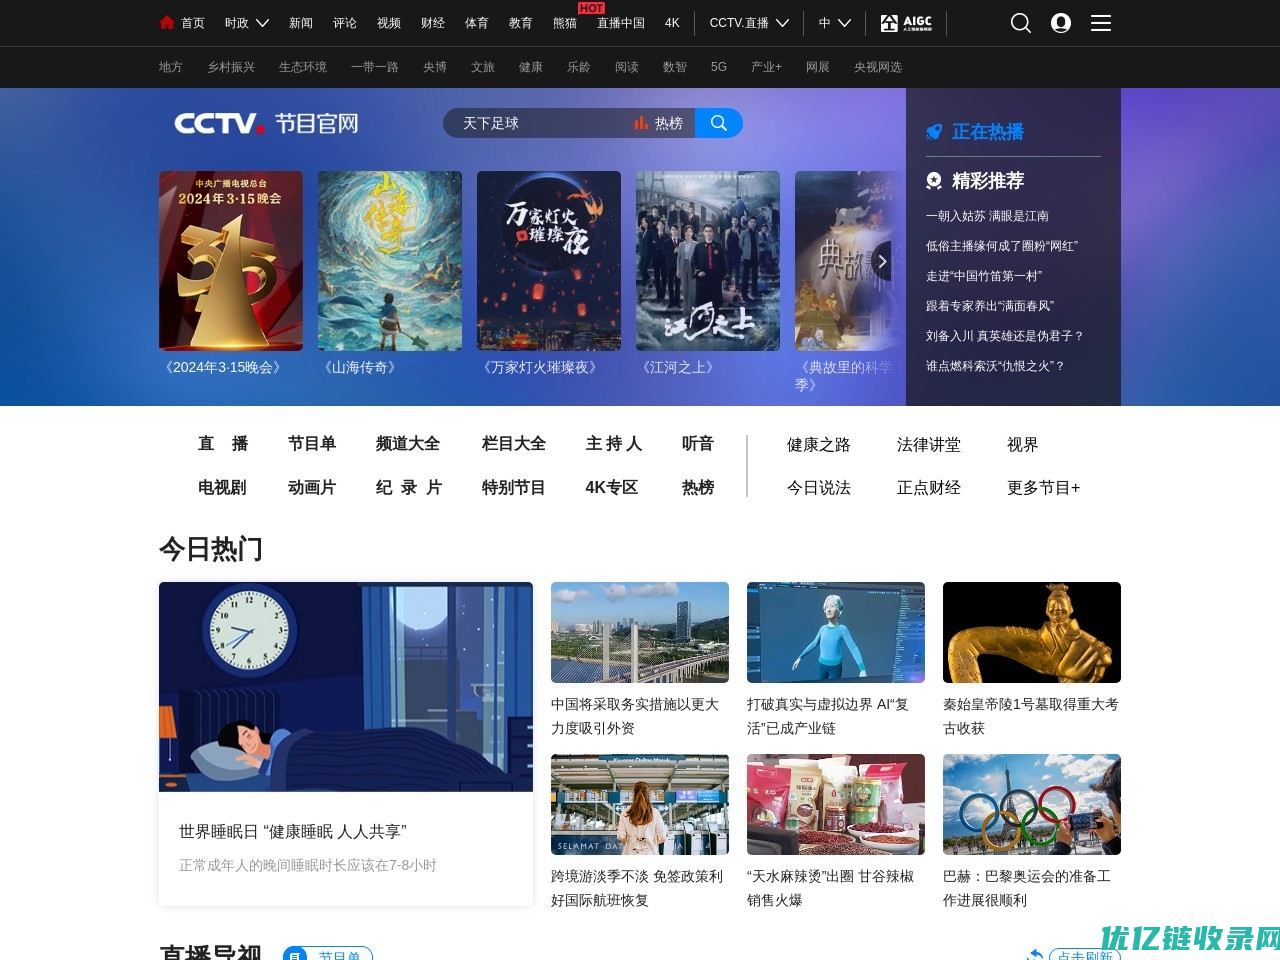 CCTV-11戏曲频道节目官网_CCTV节目官网_央视网